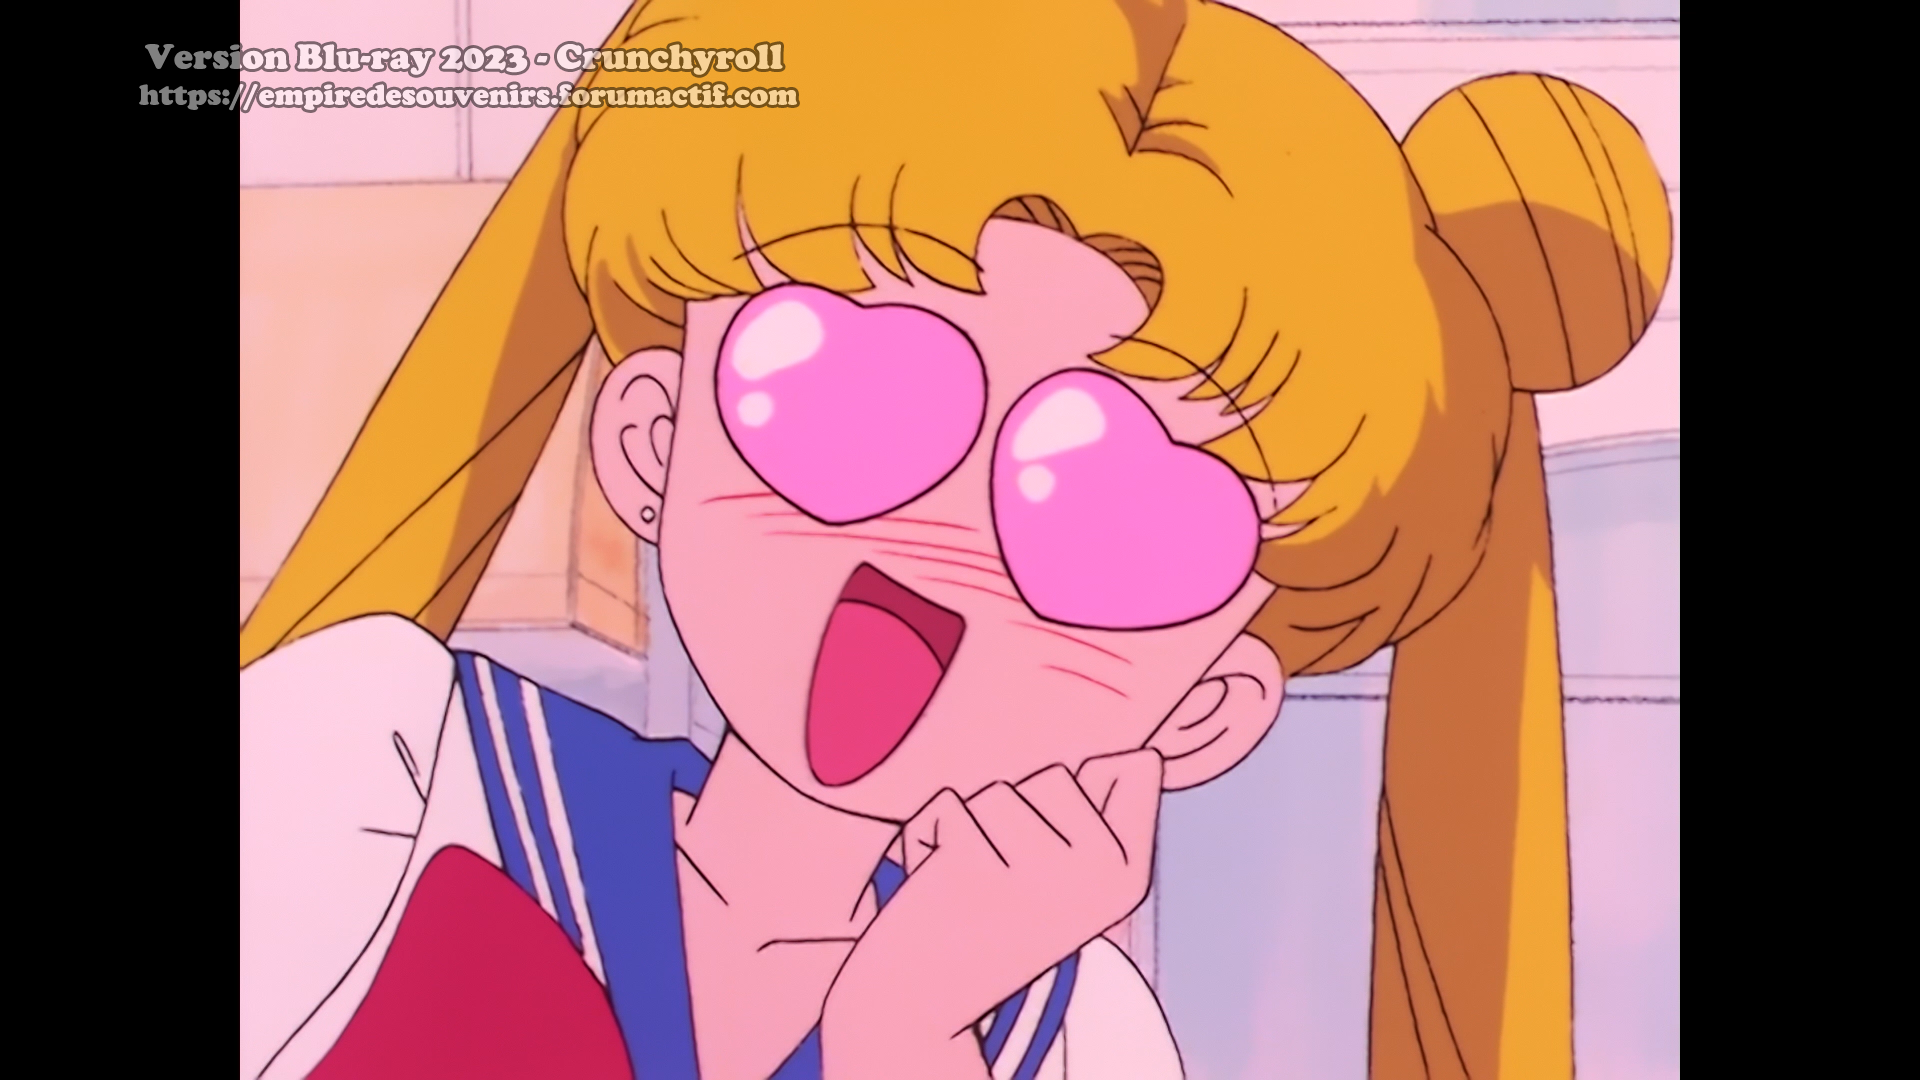 Critique Blu-ray - Sailor Moon - Crunchyroll Av4b